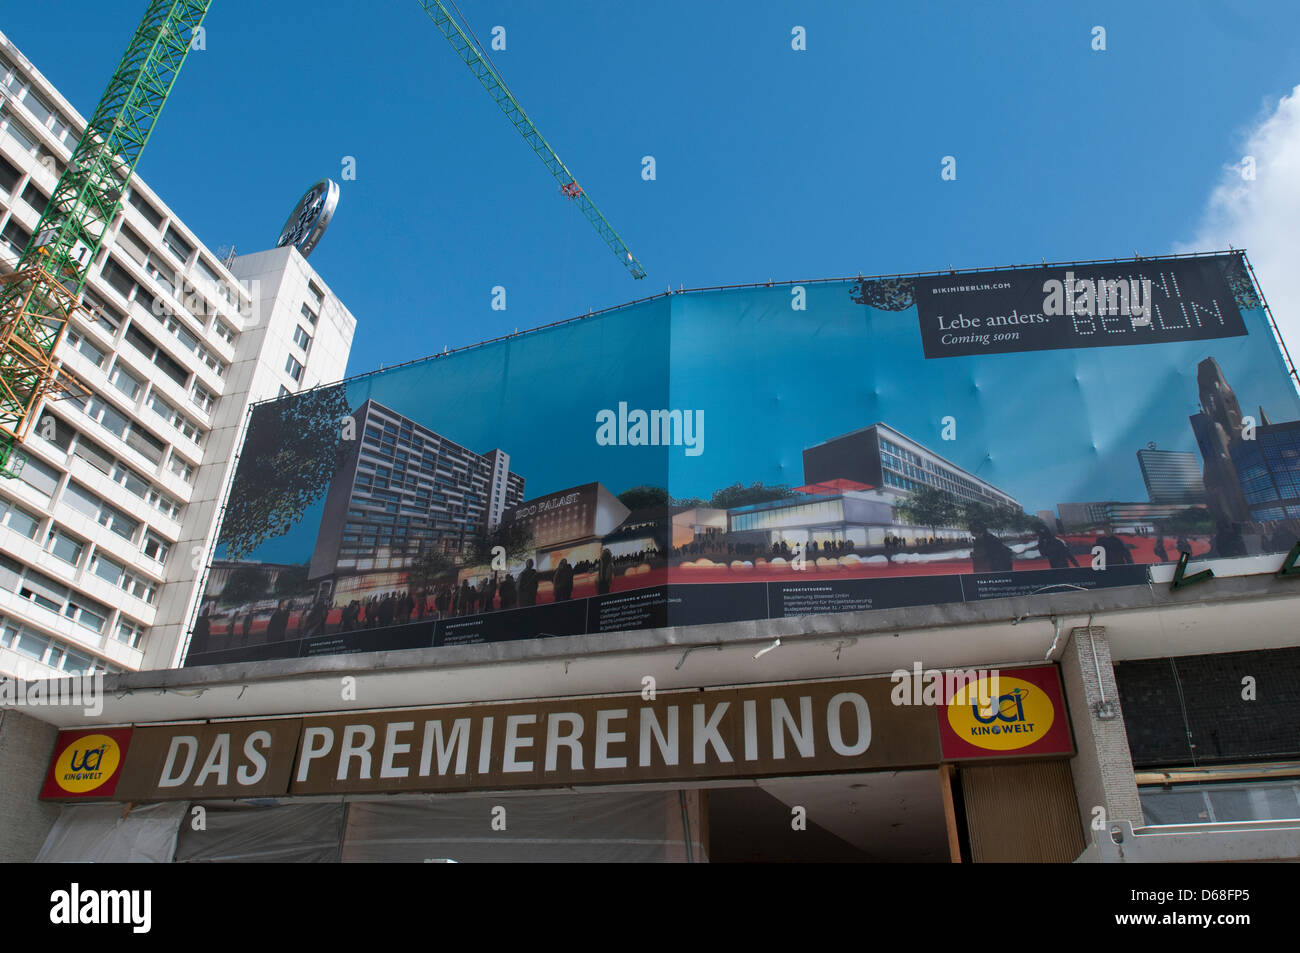 Ein Schild mit der Aufschrift "The Cinema für Premieren" wurde über dem Eingang zum Zoo Palast gelegt, die derzeit im Bau in Berlin, Deutschland, 12. Juli 2012 ist. Filme im Zimmer ohne Klimaanlage scheint ein Konzept der Vergangenheit sein. Kinos werden ausgebaut. CinemaxX-Gründer Flebbe investiert derzeit 4,5 Millionen Euro in das Kino Zoo Palast Stockfoto